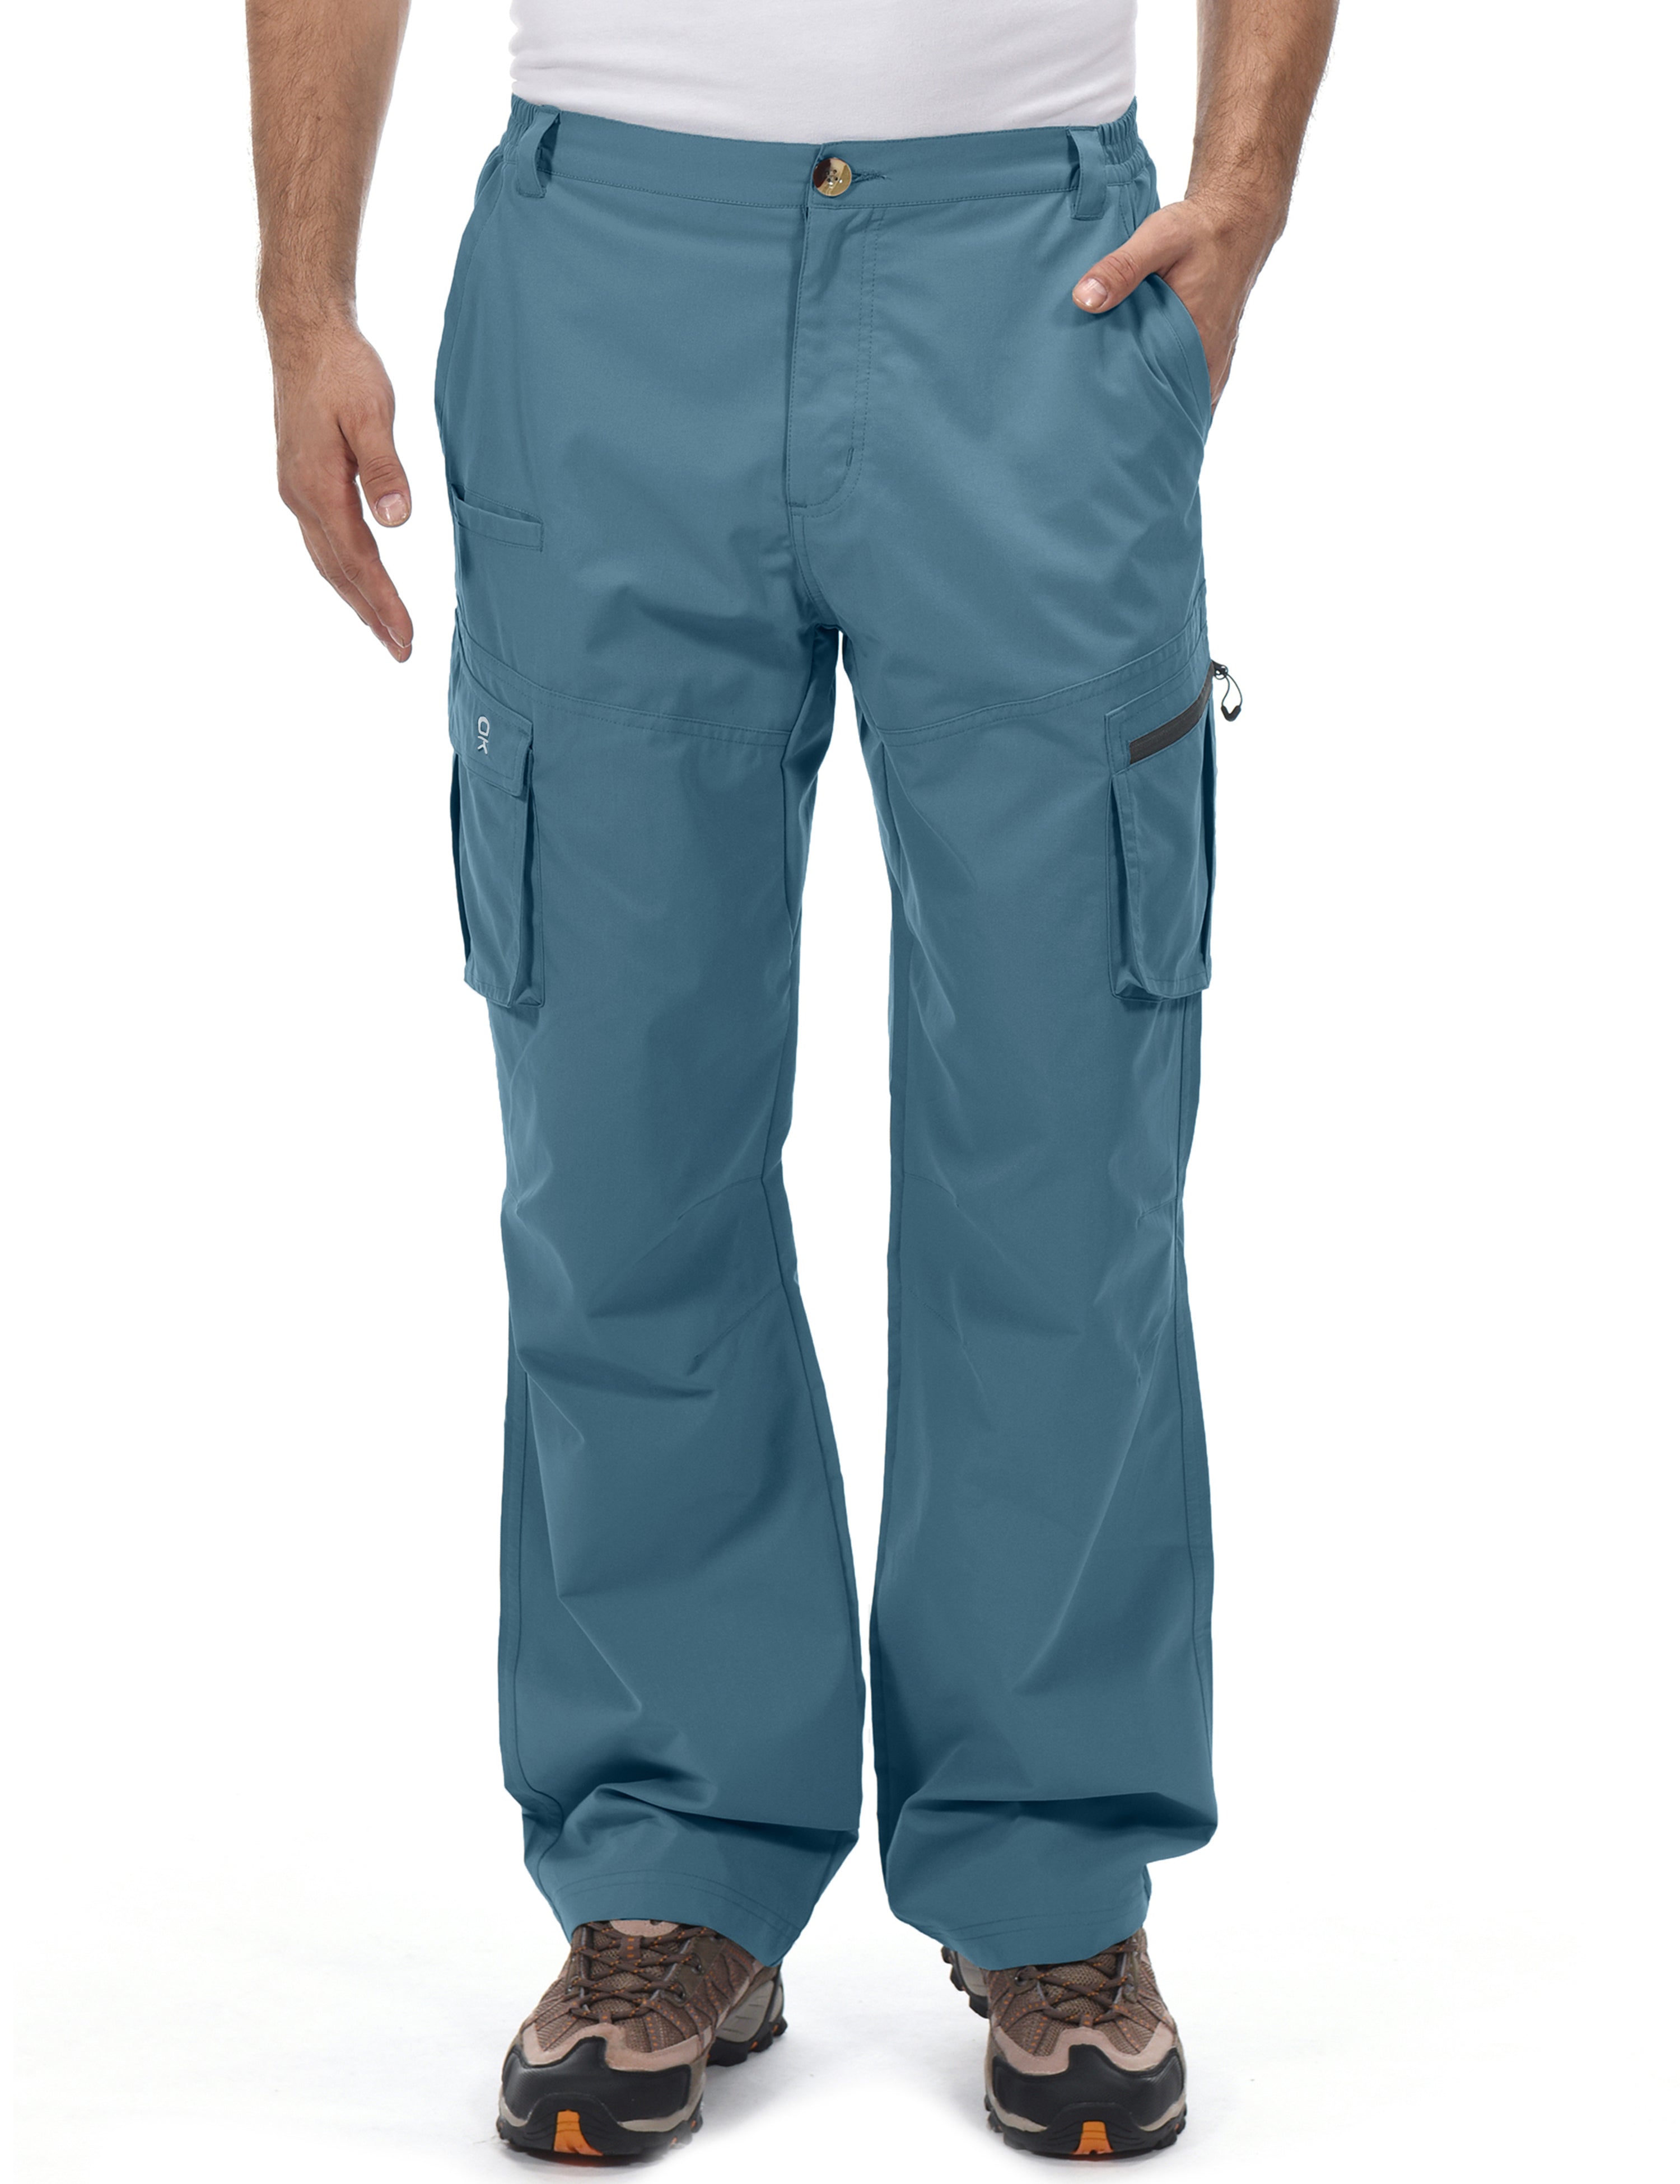 MOCOLY Men's Hiking Cargo Pants Outdoor Water Resistant Tactical Pants  Lightweig | eBay